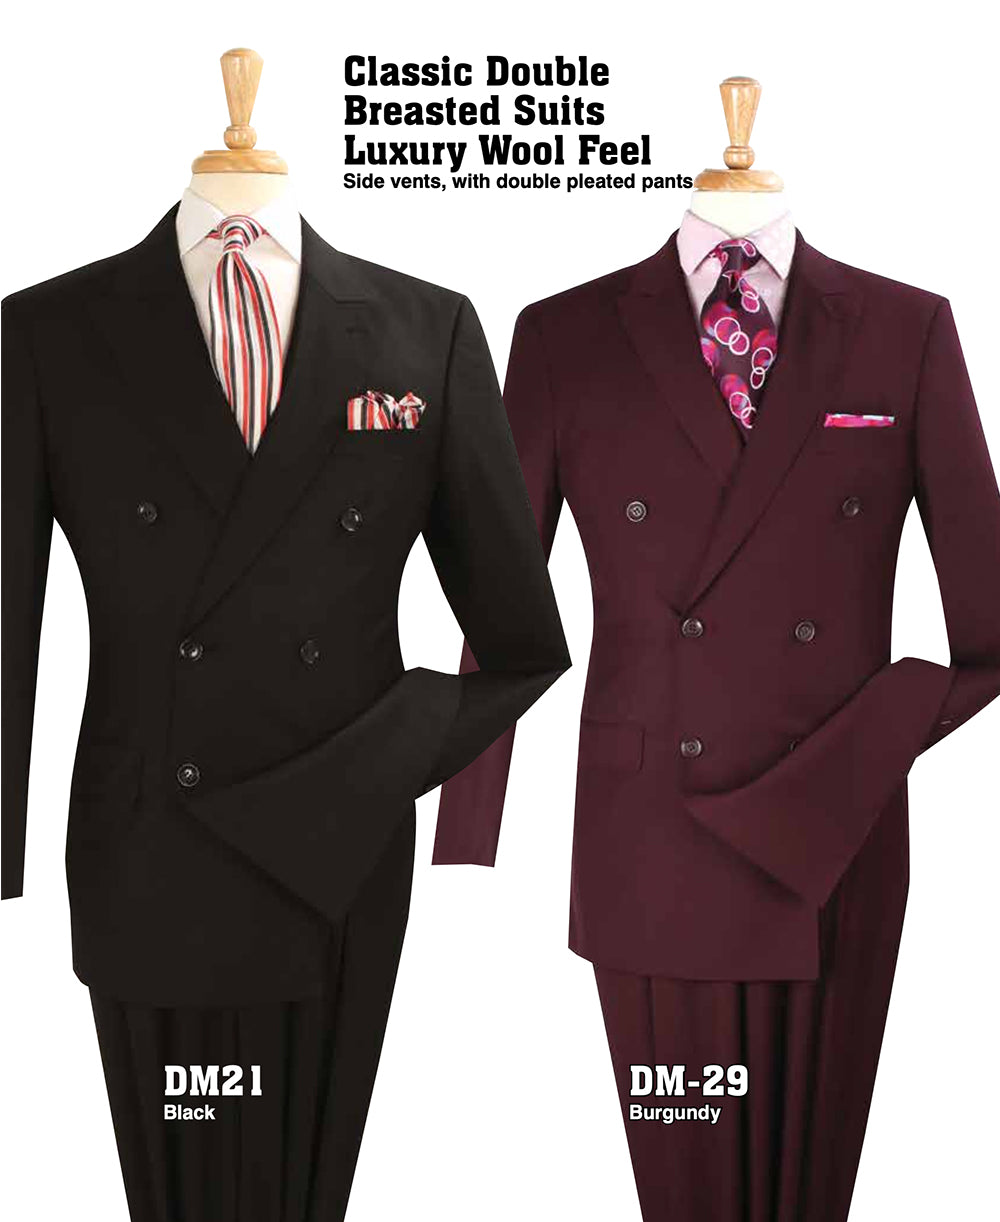 Men's High Fashion Suit DM